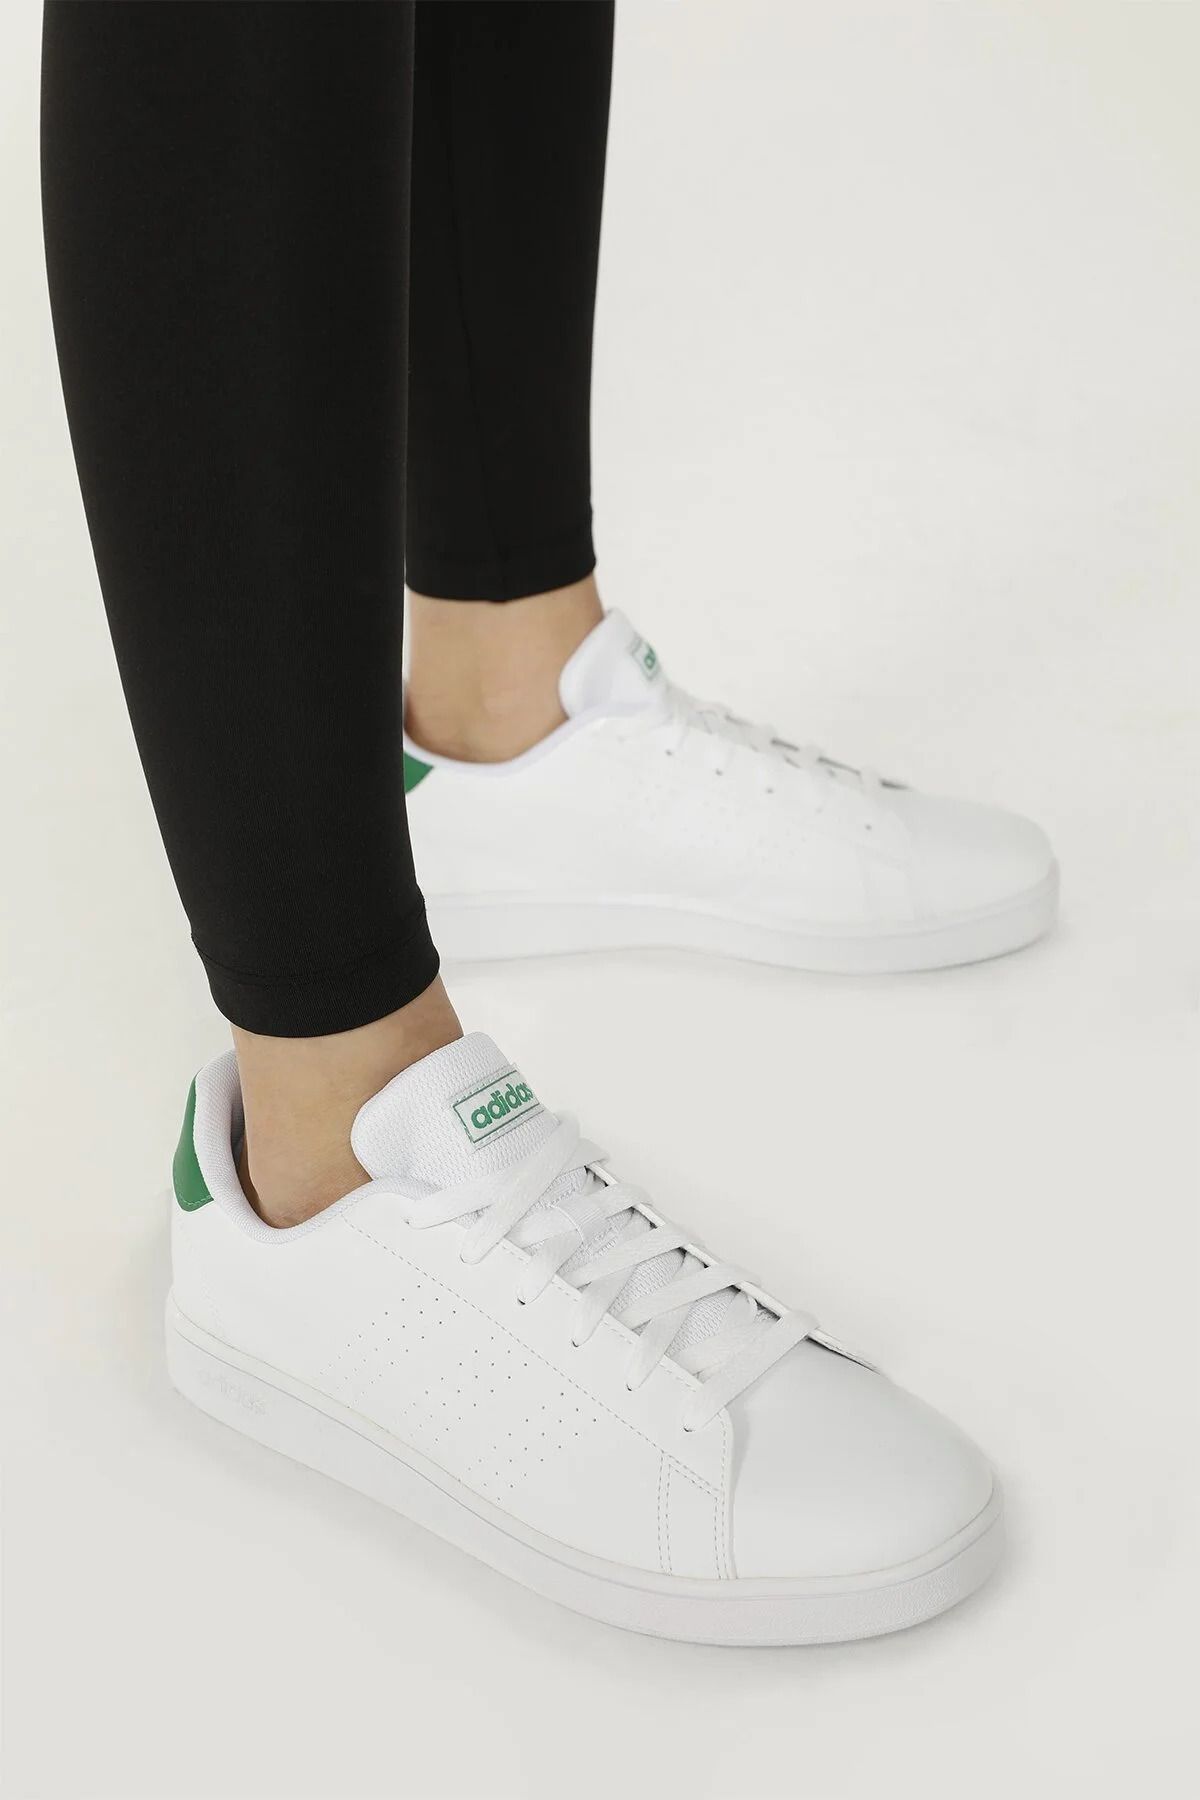 adidas Advantage Günlük Ayakkabı Sneaker Beyaz